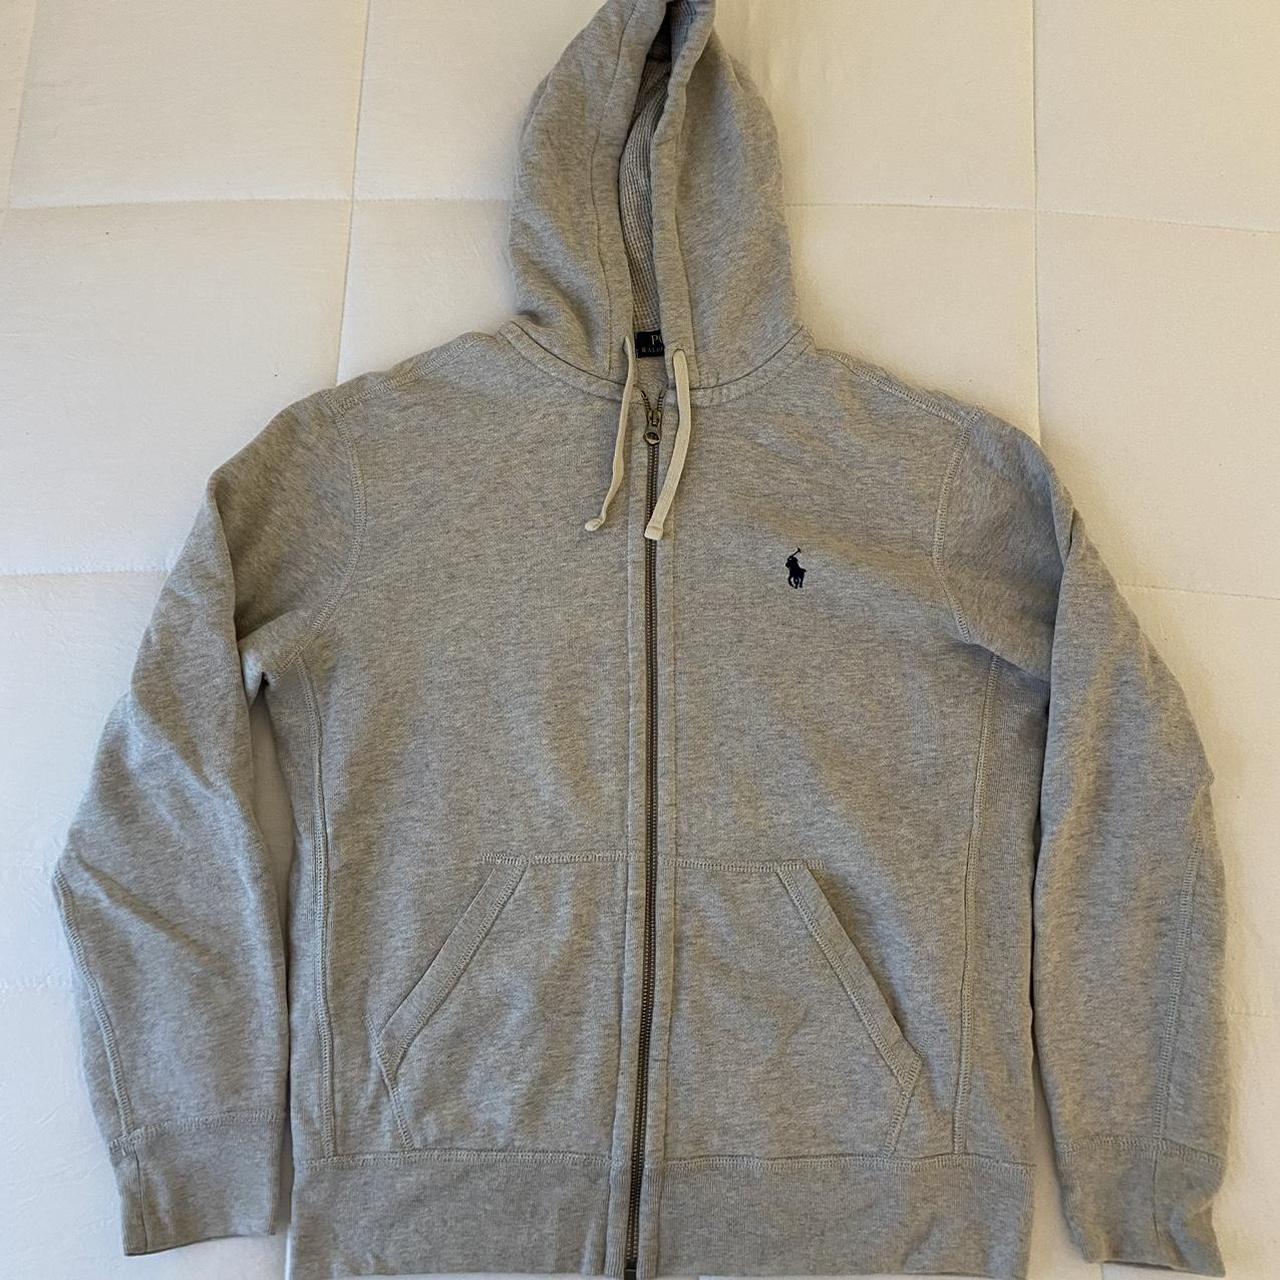 Polo zip up hoodie wear on zipper shown in last photo. - Depop